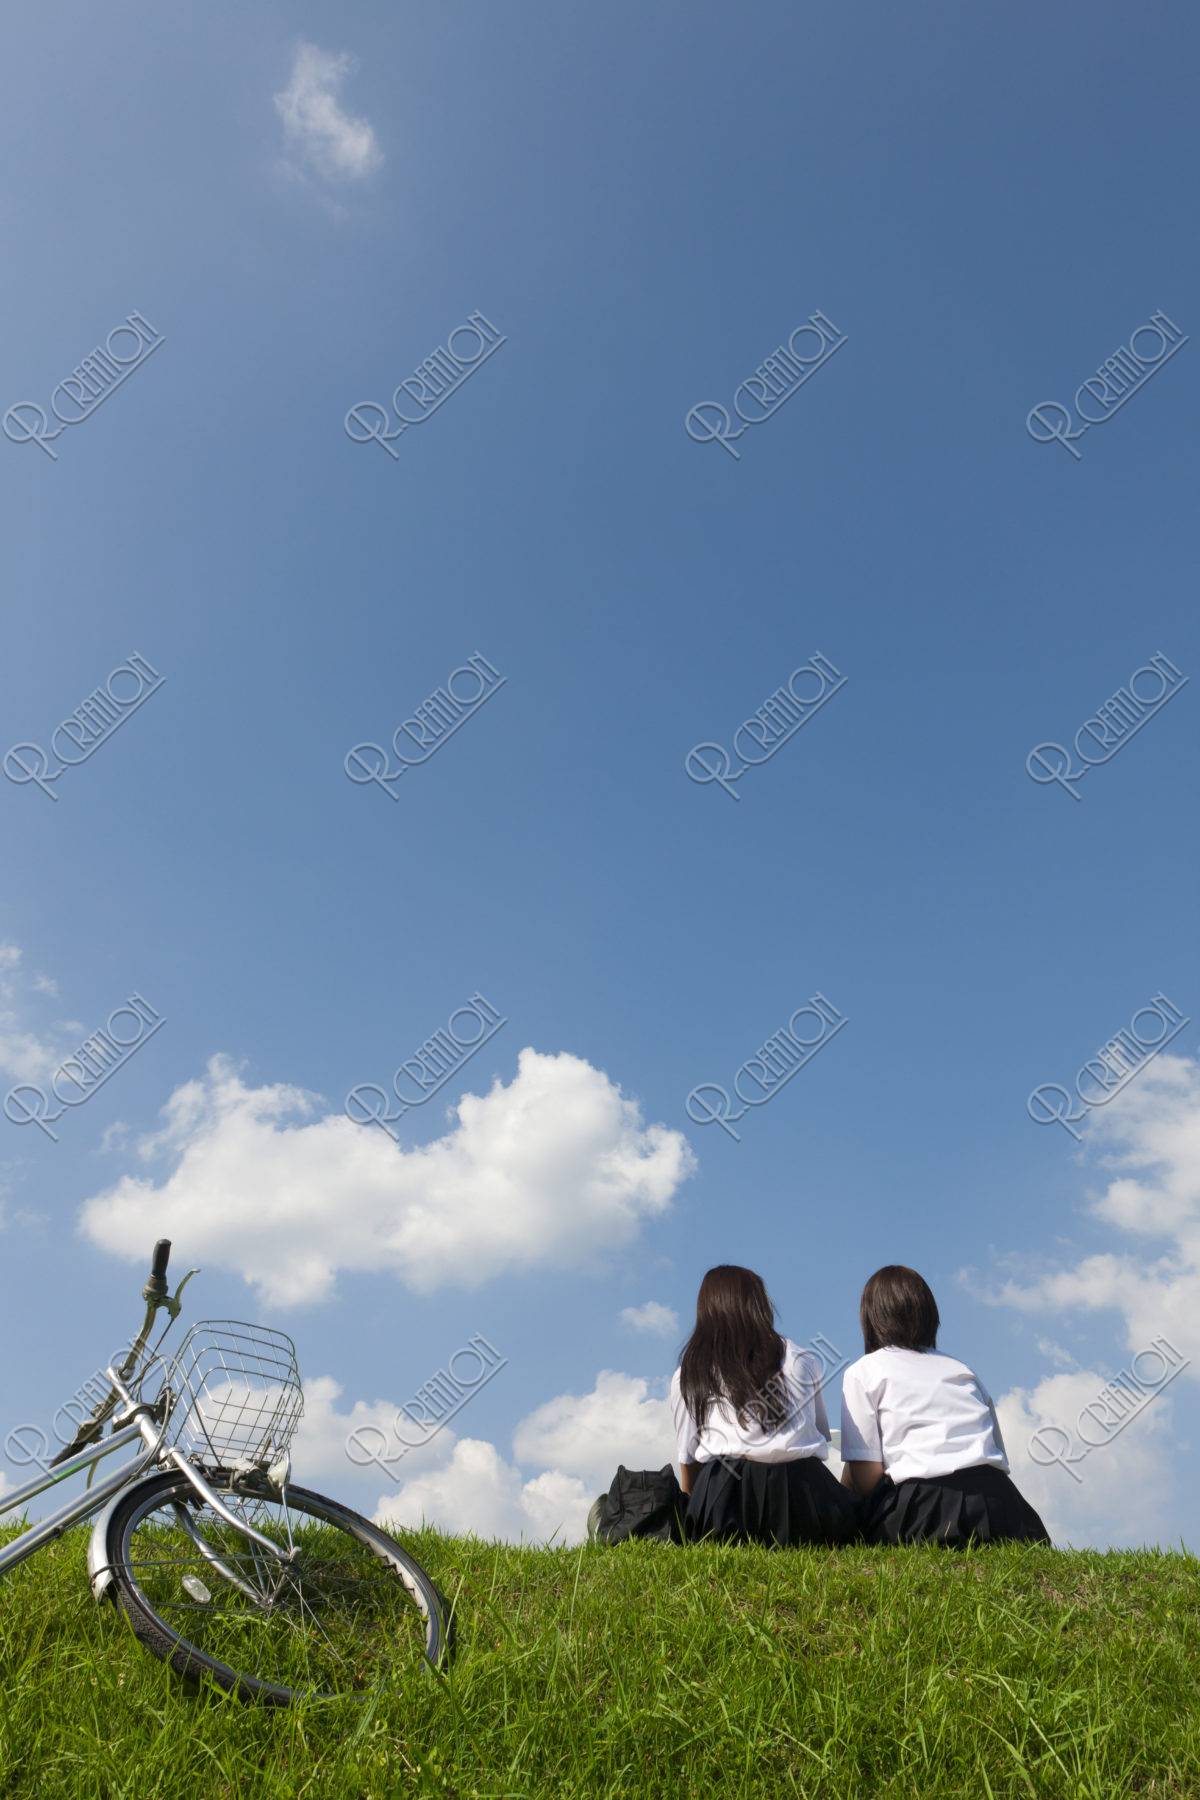 土手に座っておしゃべりする二人の女子高校生 ストックフォト アールクリエーション